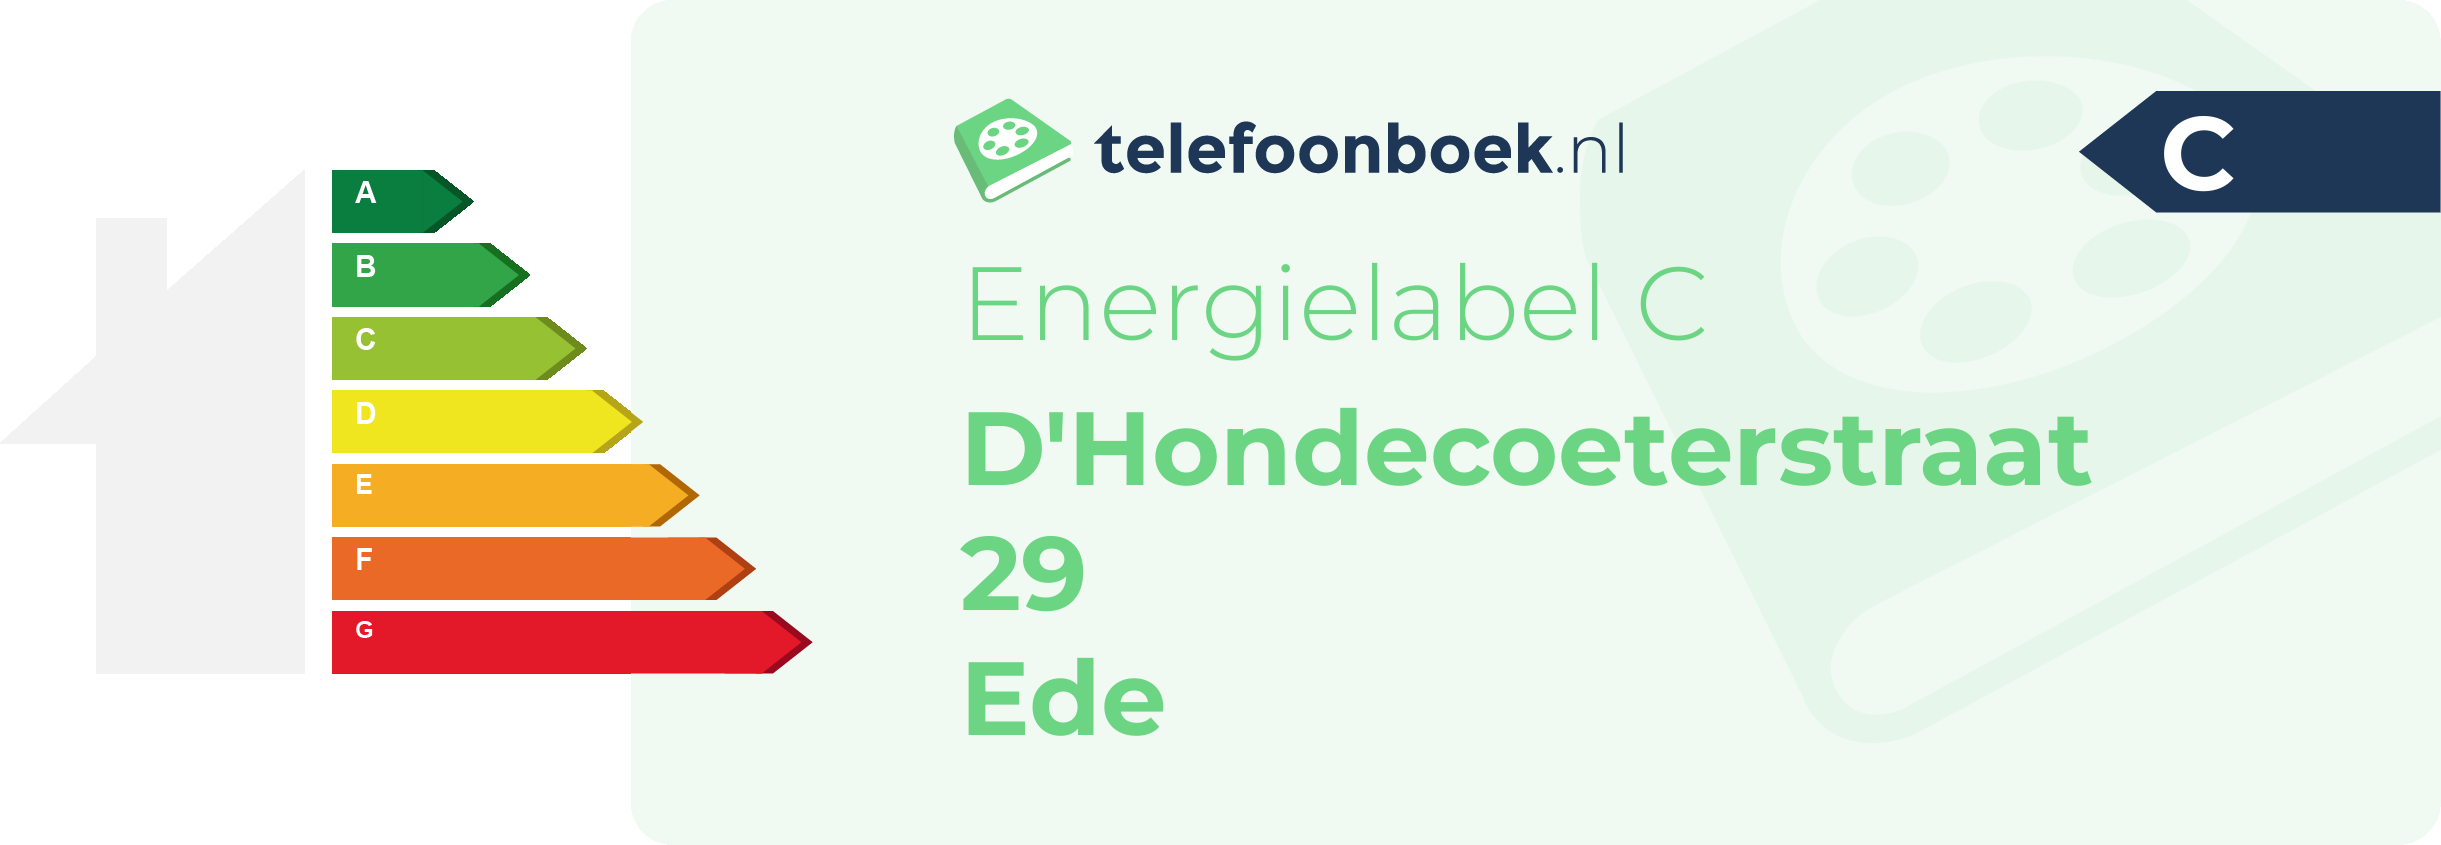 Energielabel D'Hondecoeterstraat 29 Ede